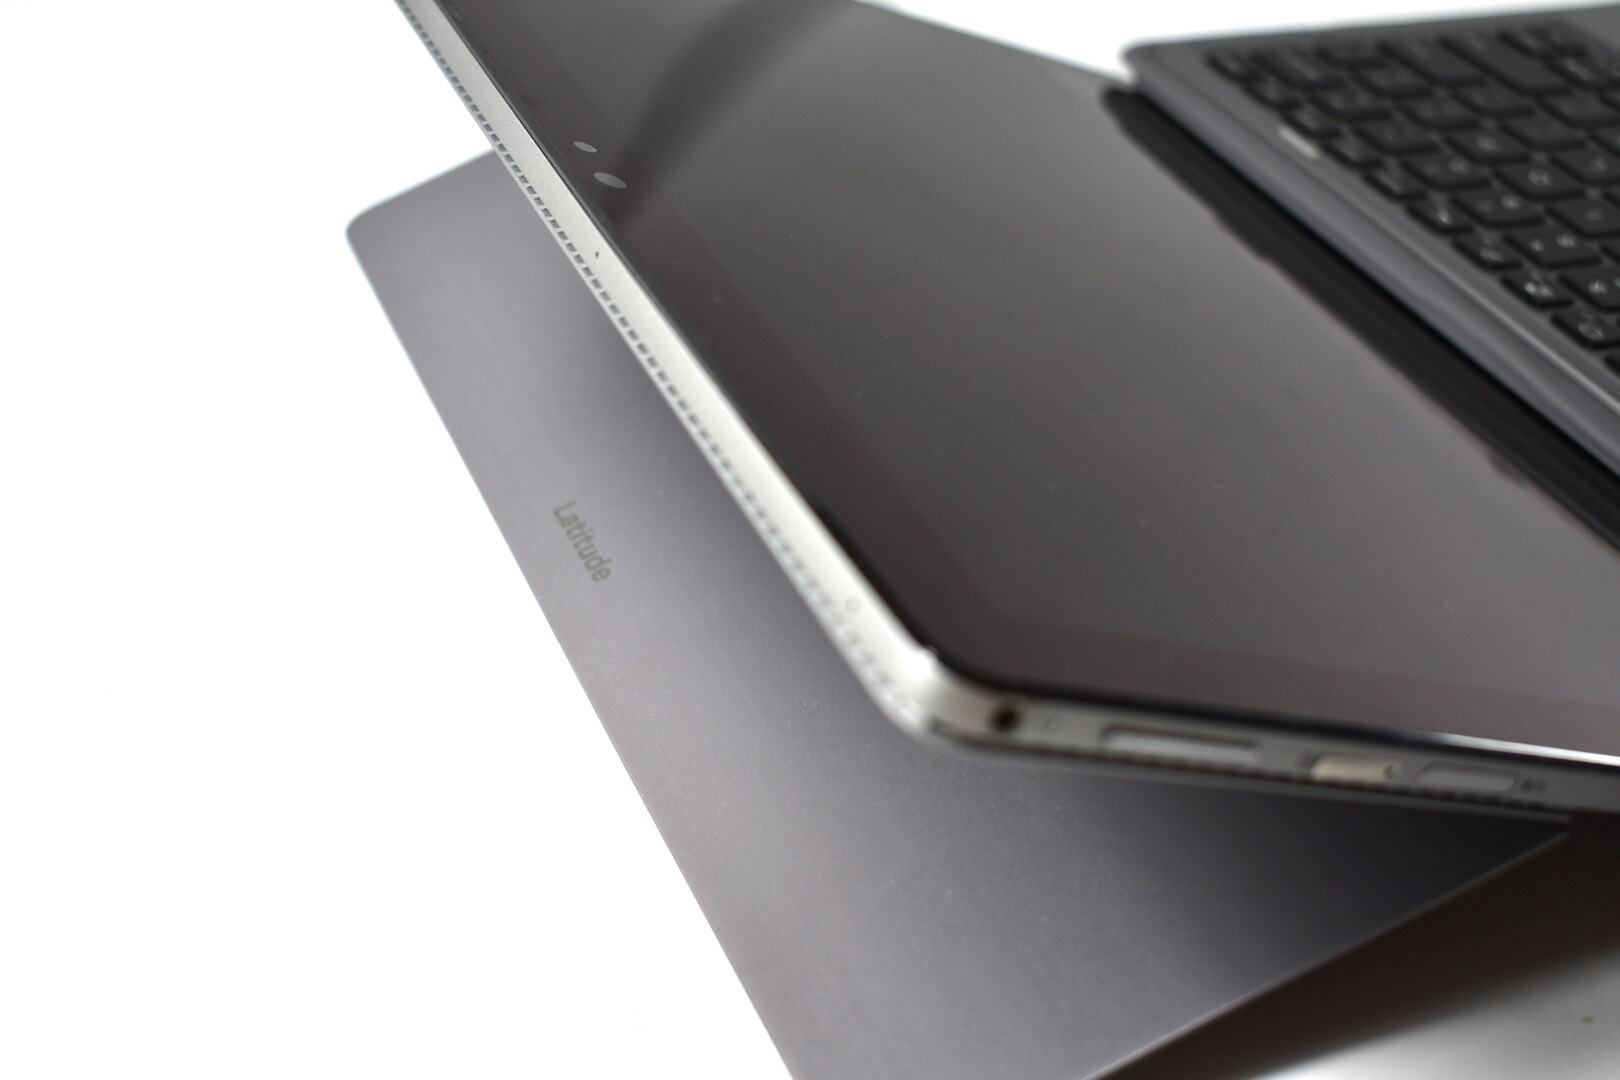 Đánh giá Dell Latitude 7200 2 in 1: Một chiếc Laptop tạo ấn tượng tốt